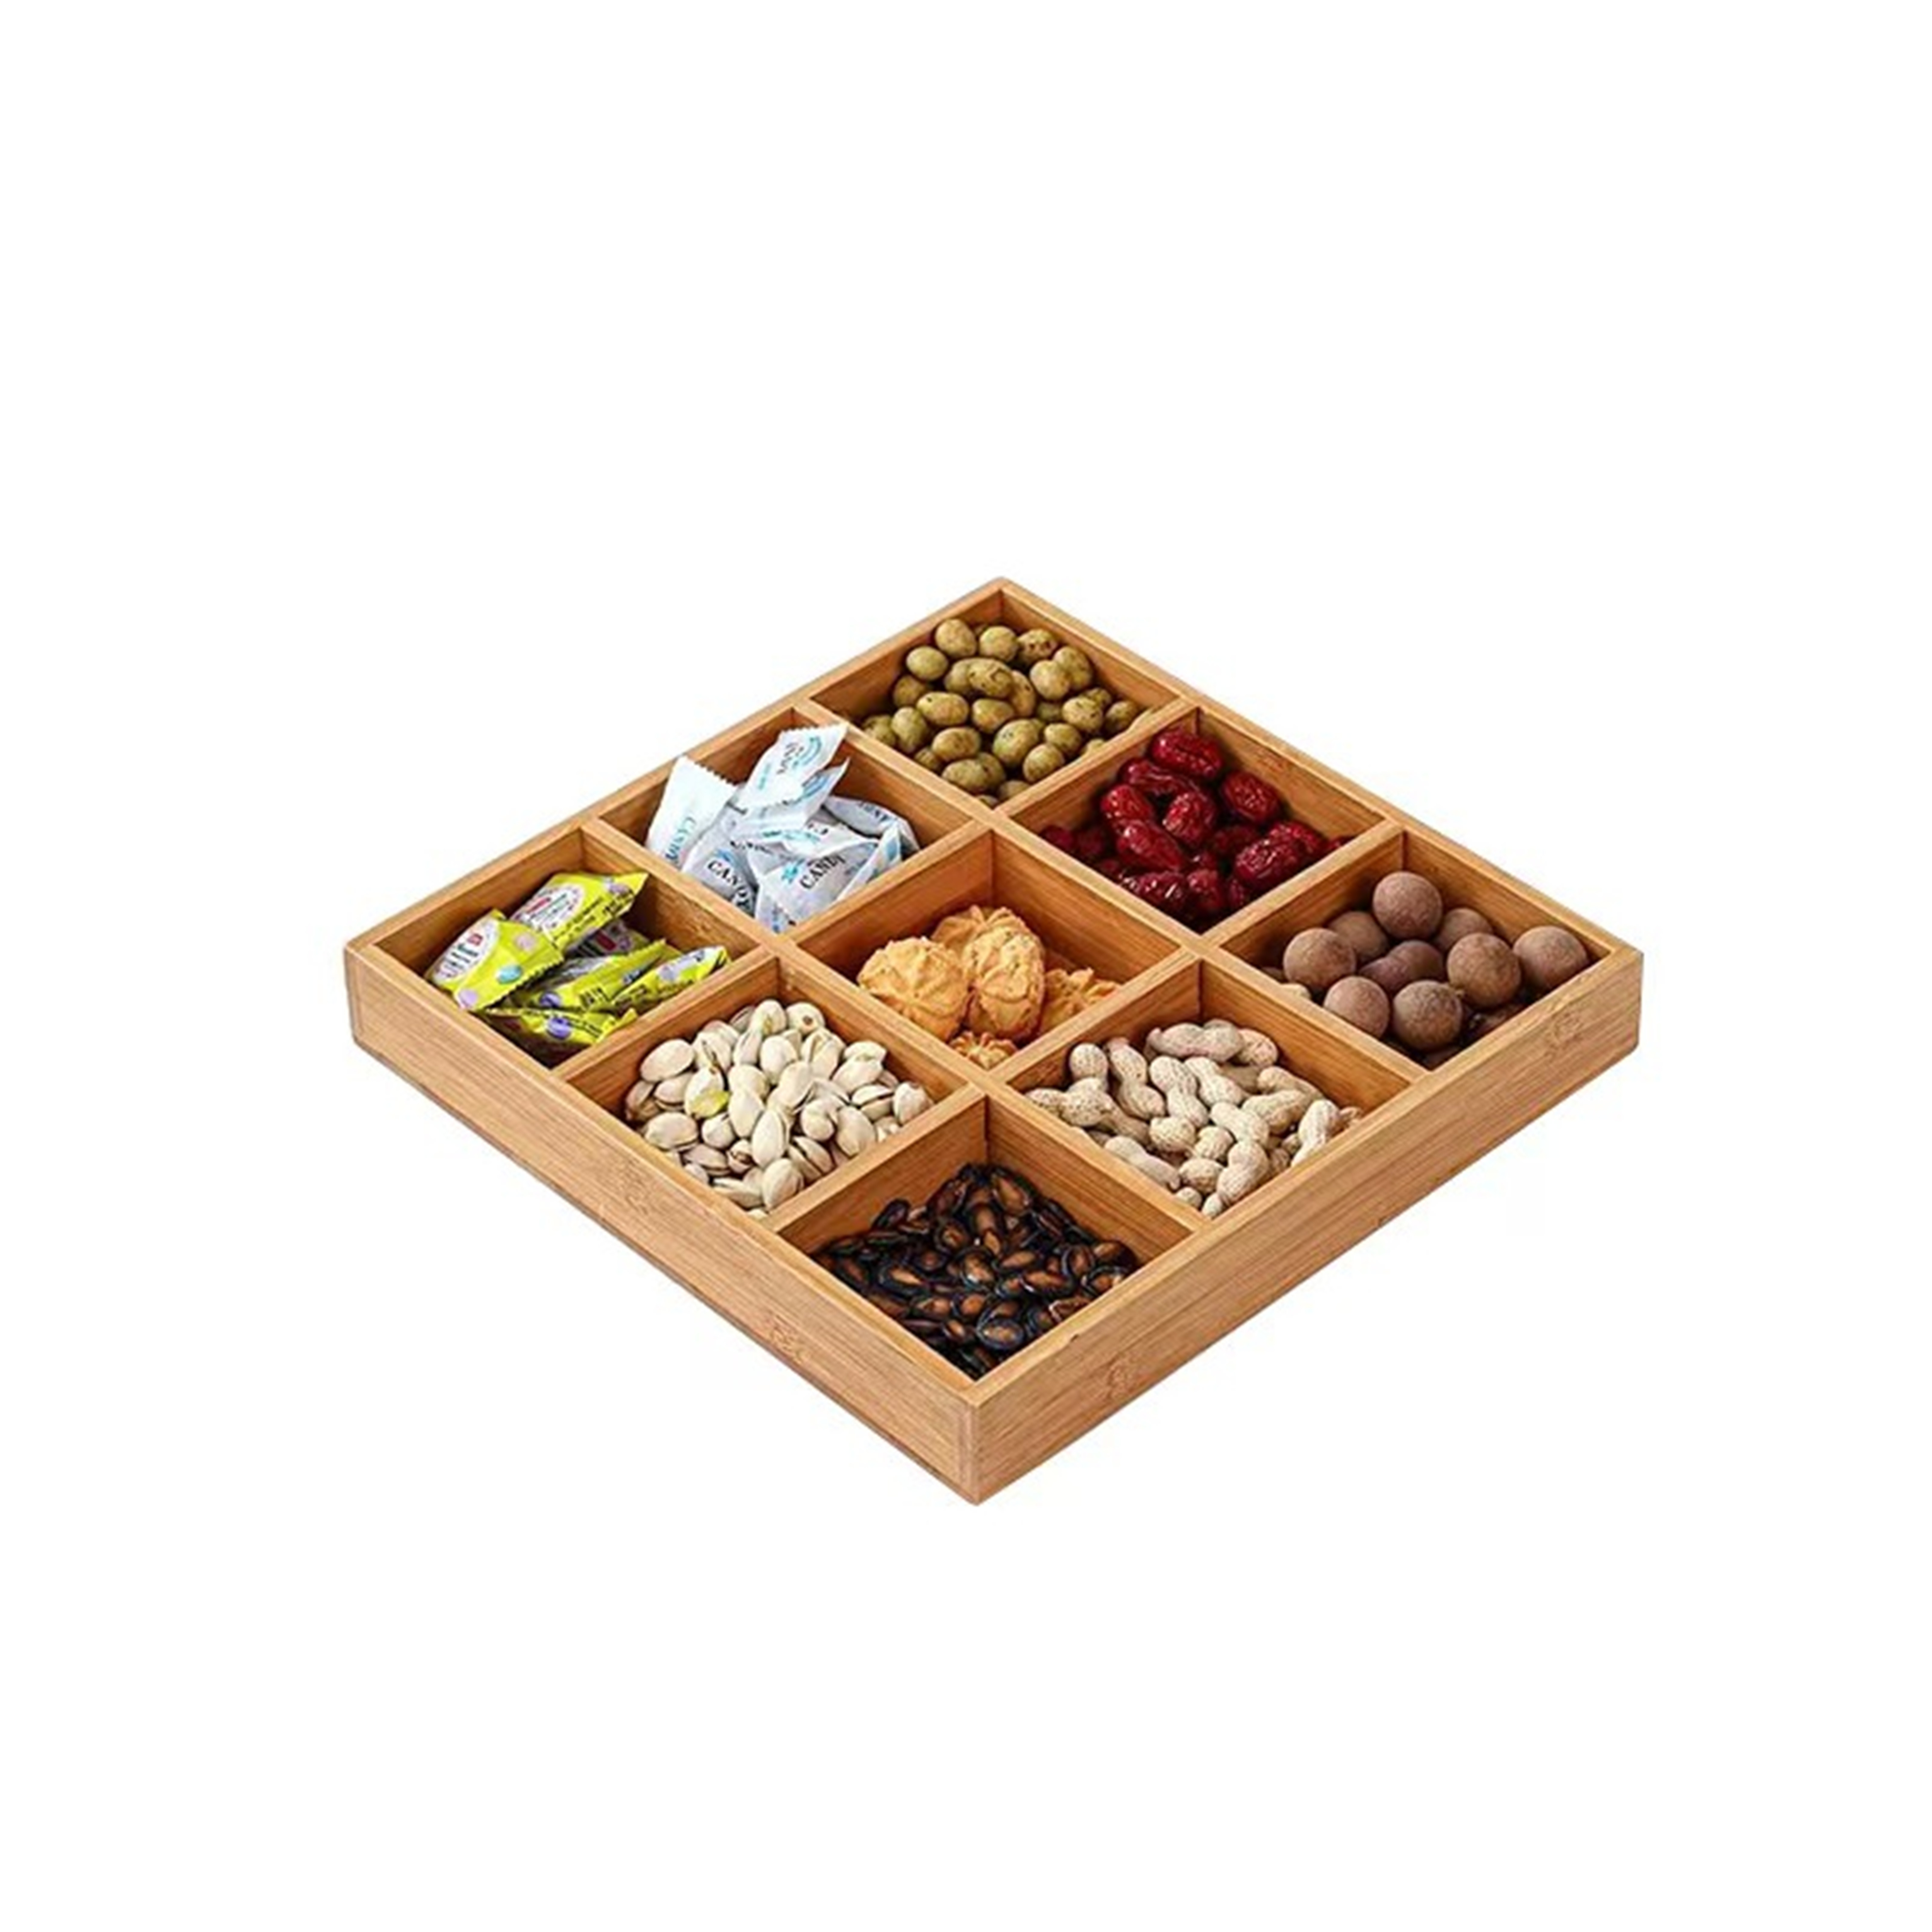 Dried fruit box, snack box, nut storage box